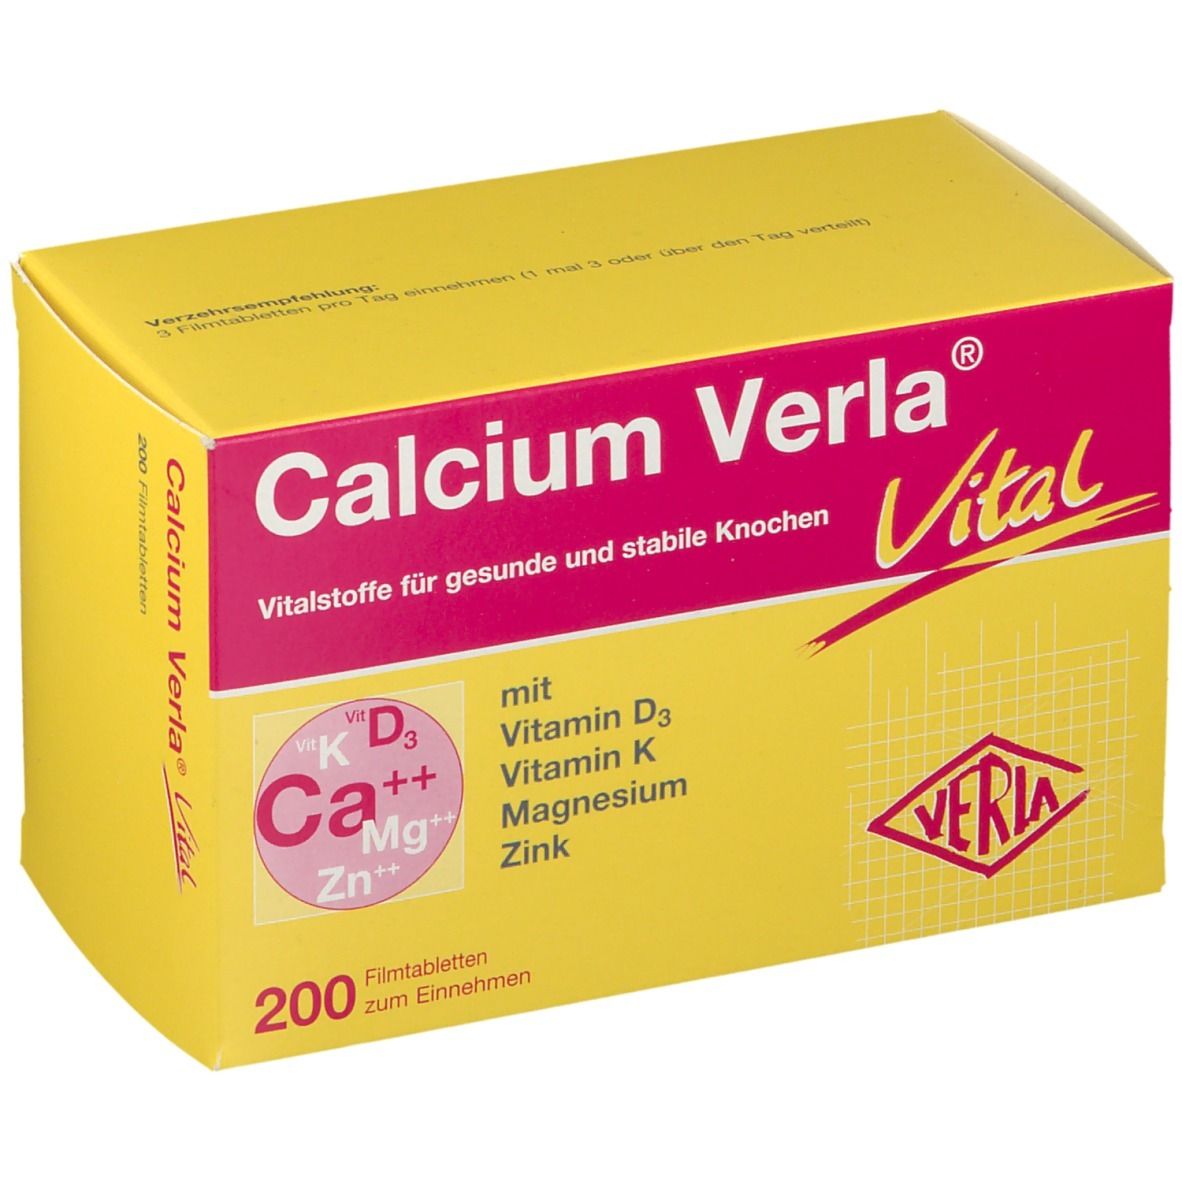 Calcium Verla® Vital